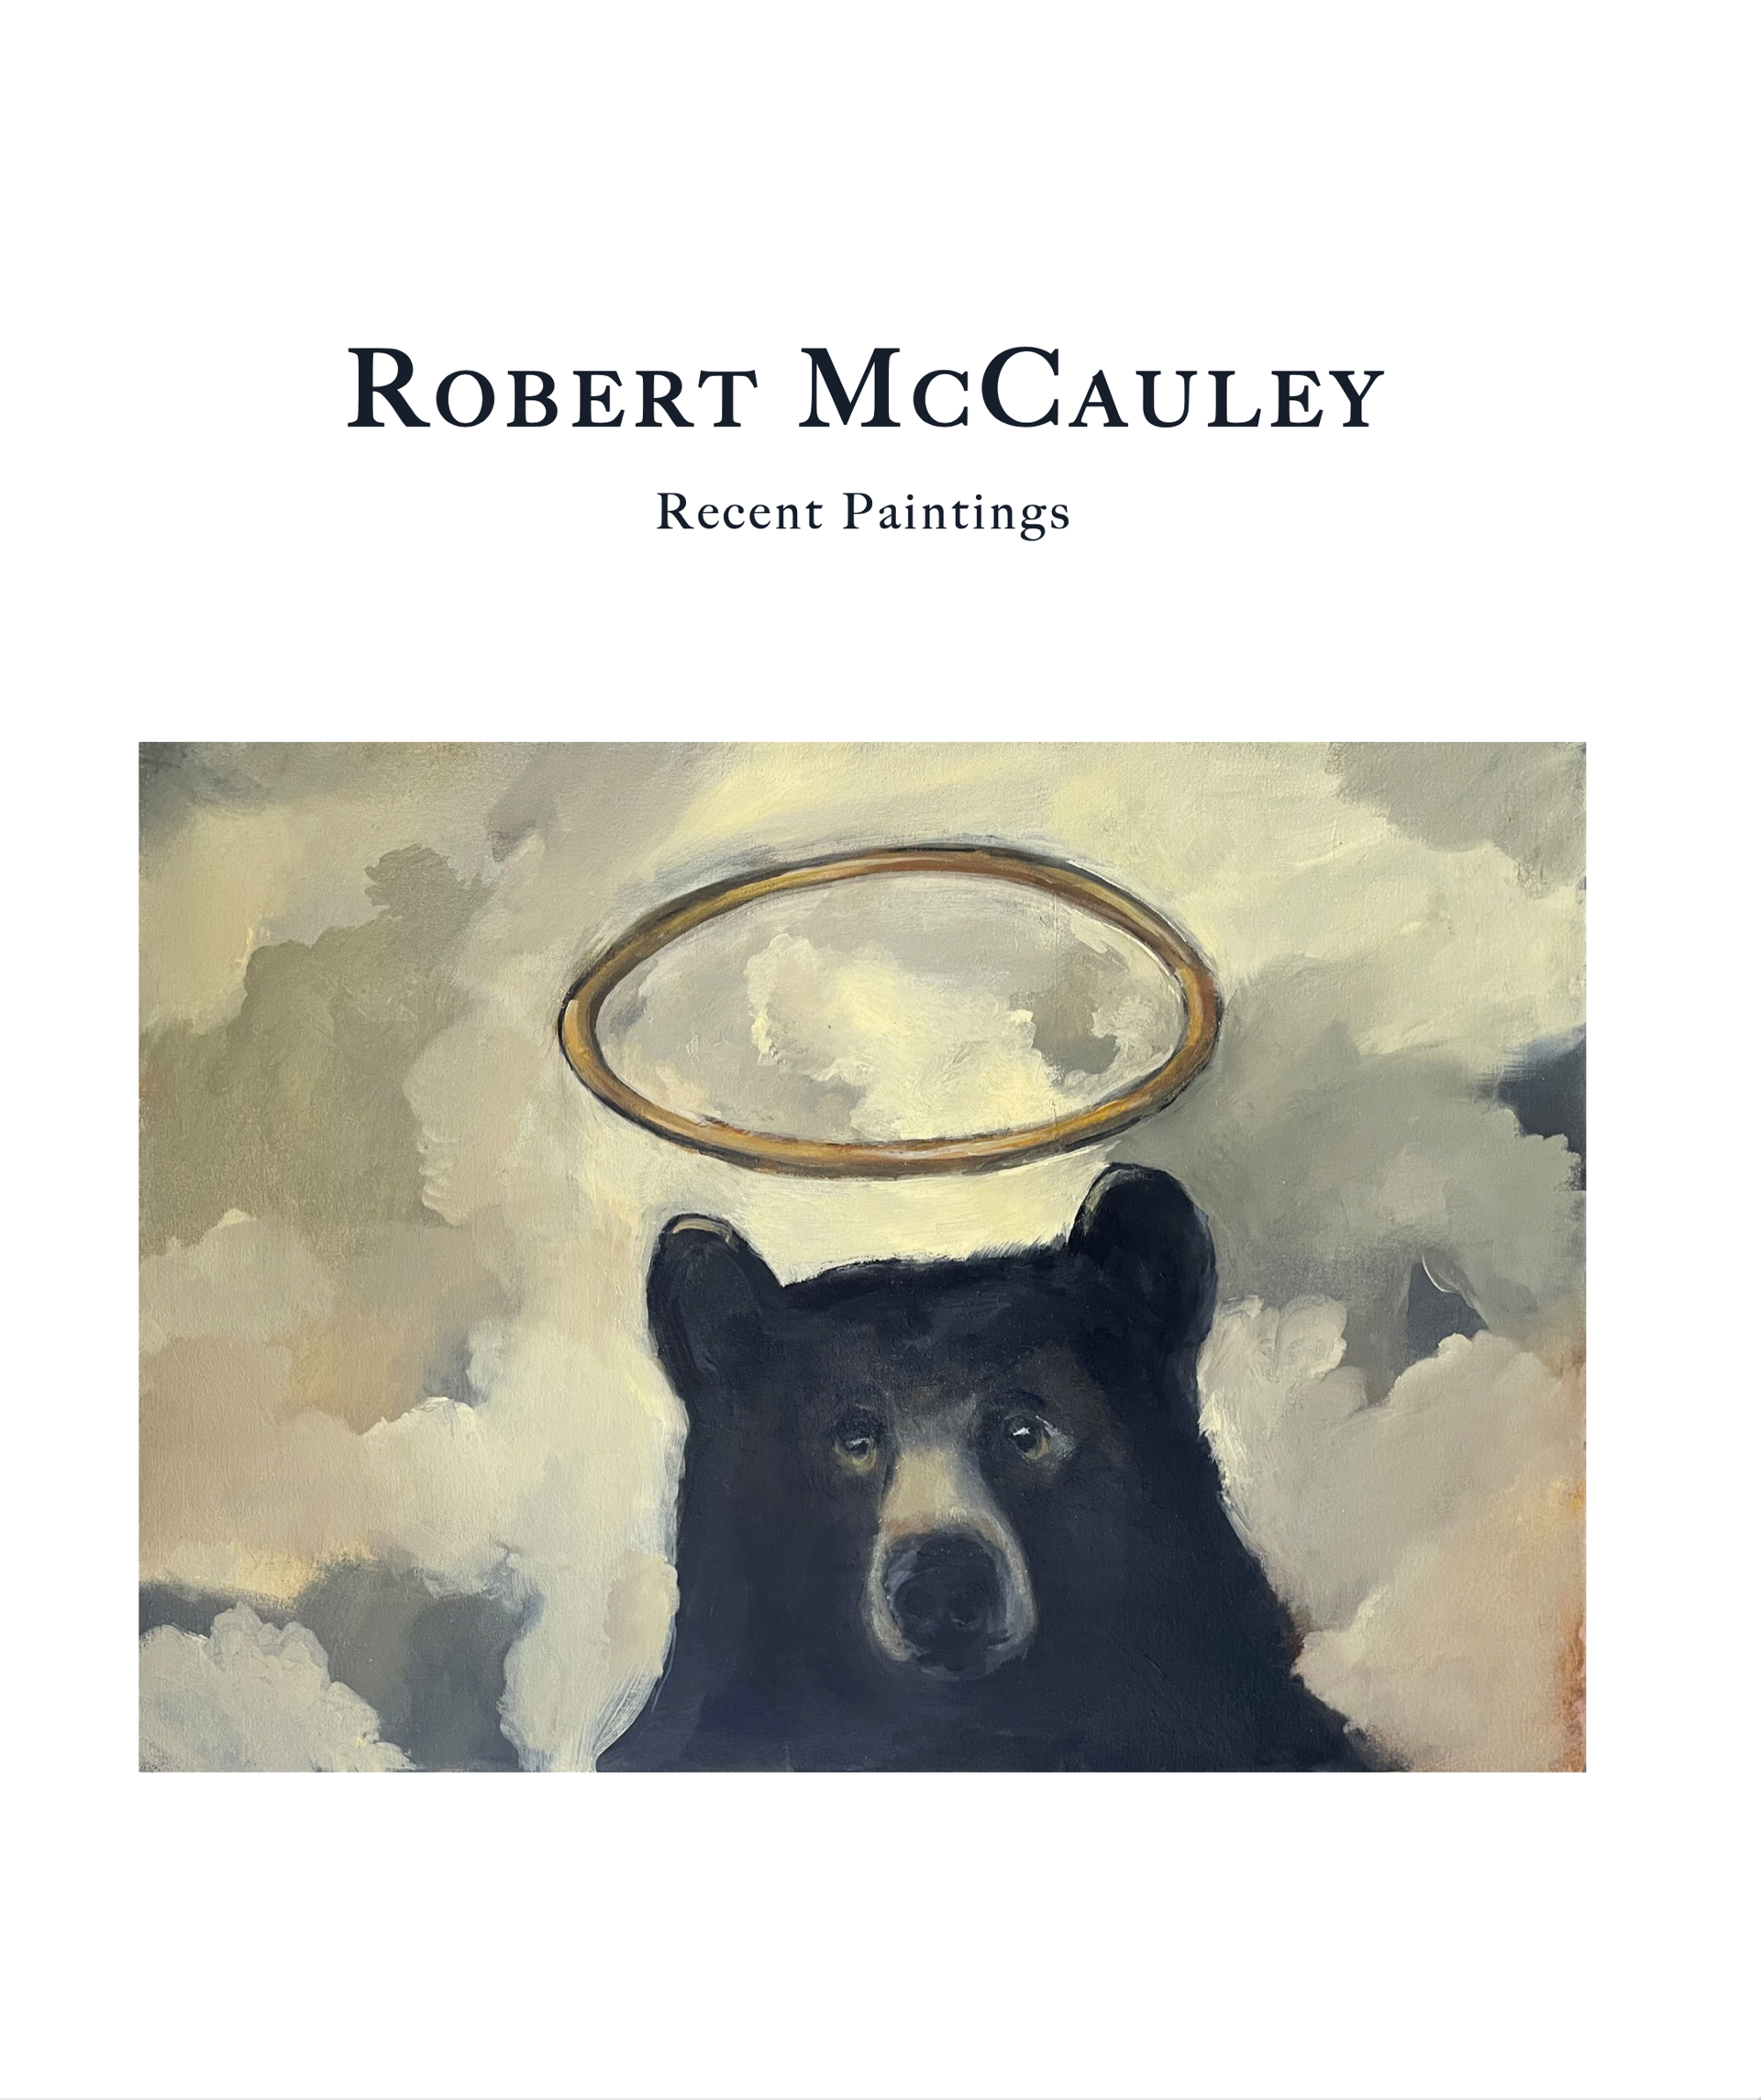 Robert McCauley Catalog by Robert McCauley